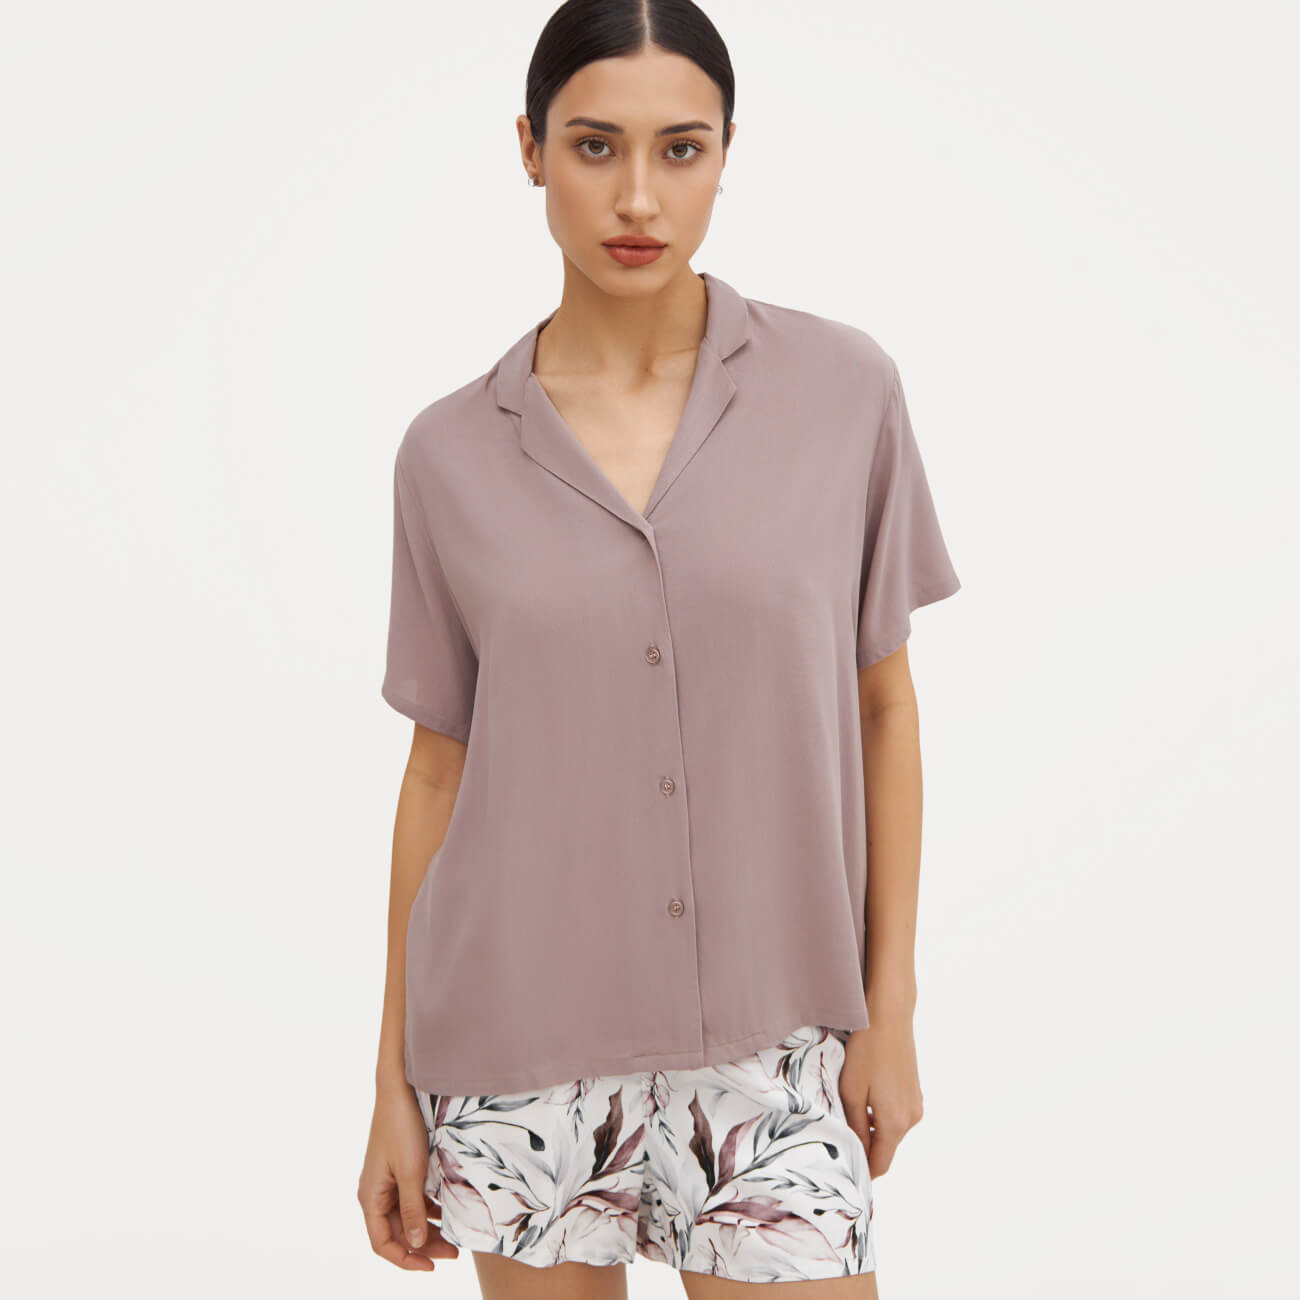 Рубашка женская, домашняя р. S, с коротким рукавом, вискоза, пыльно-розовая, Rosana